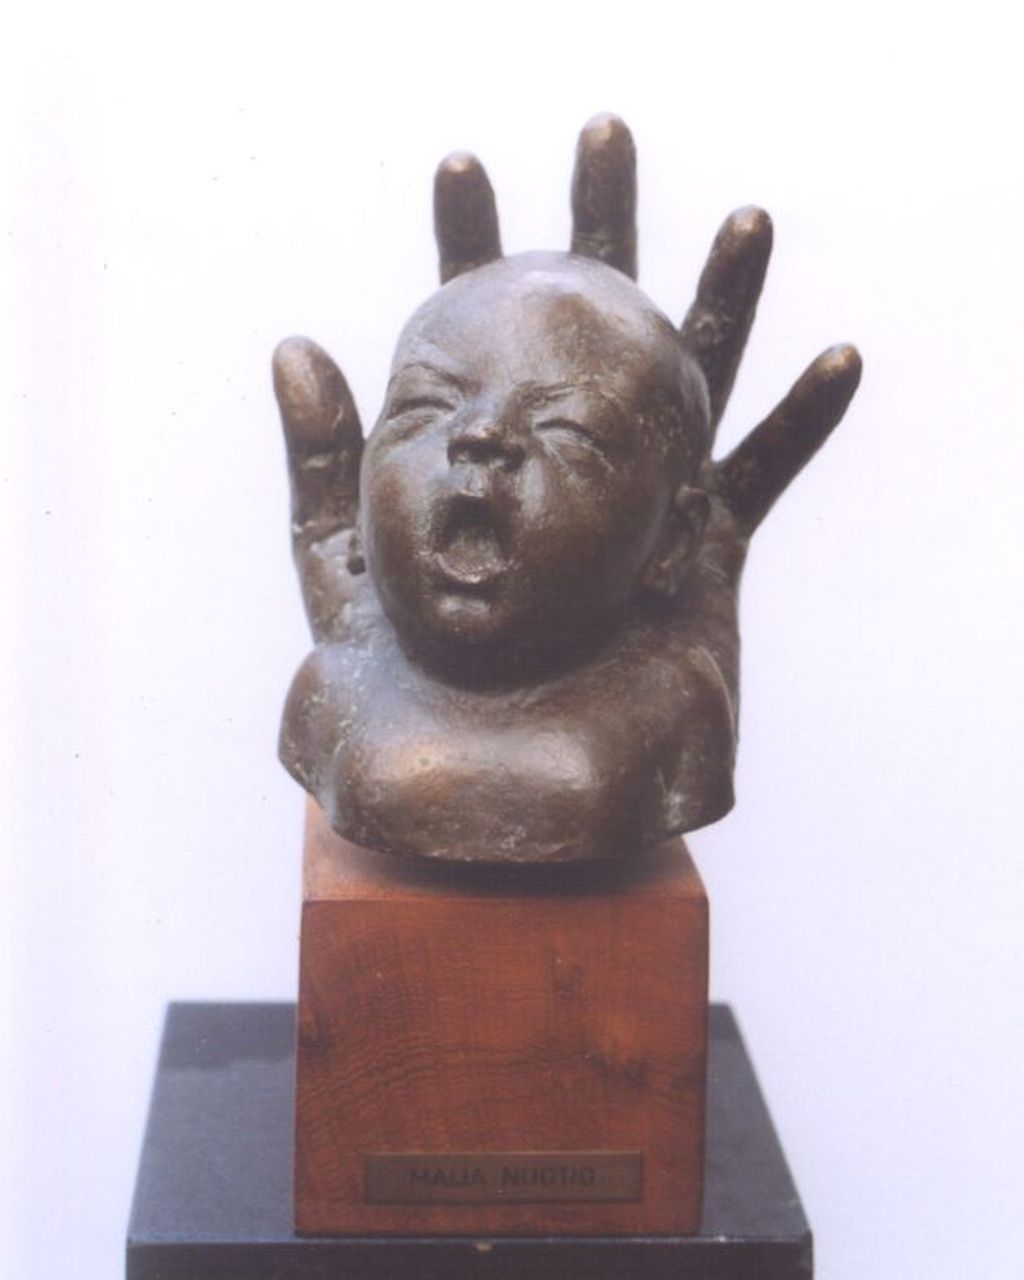 Maija Nuotio | Babyhoofdje gevat in een hand, bronze, 21.5 x 18.5 cm, gesigneerd op zijkant hand and gedateerd '74